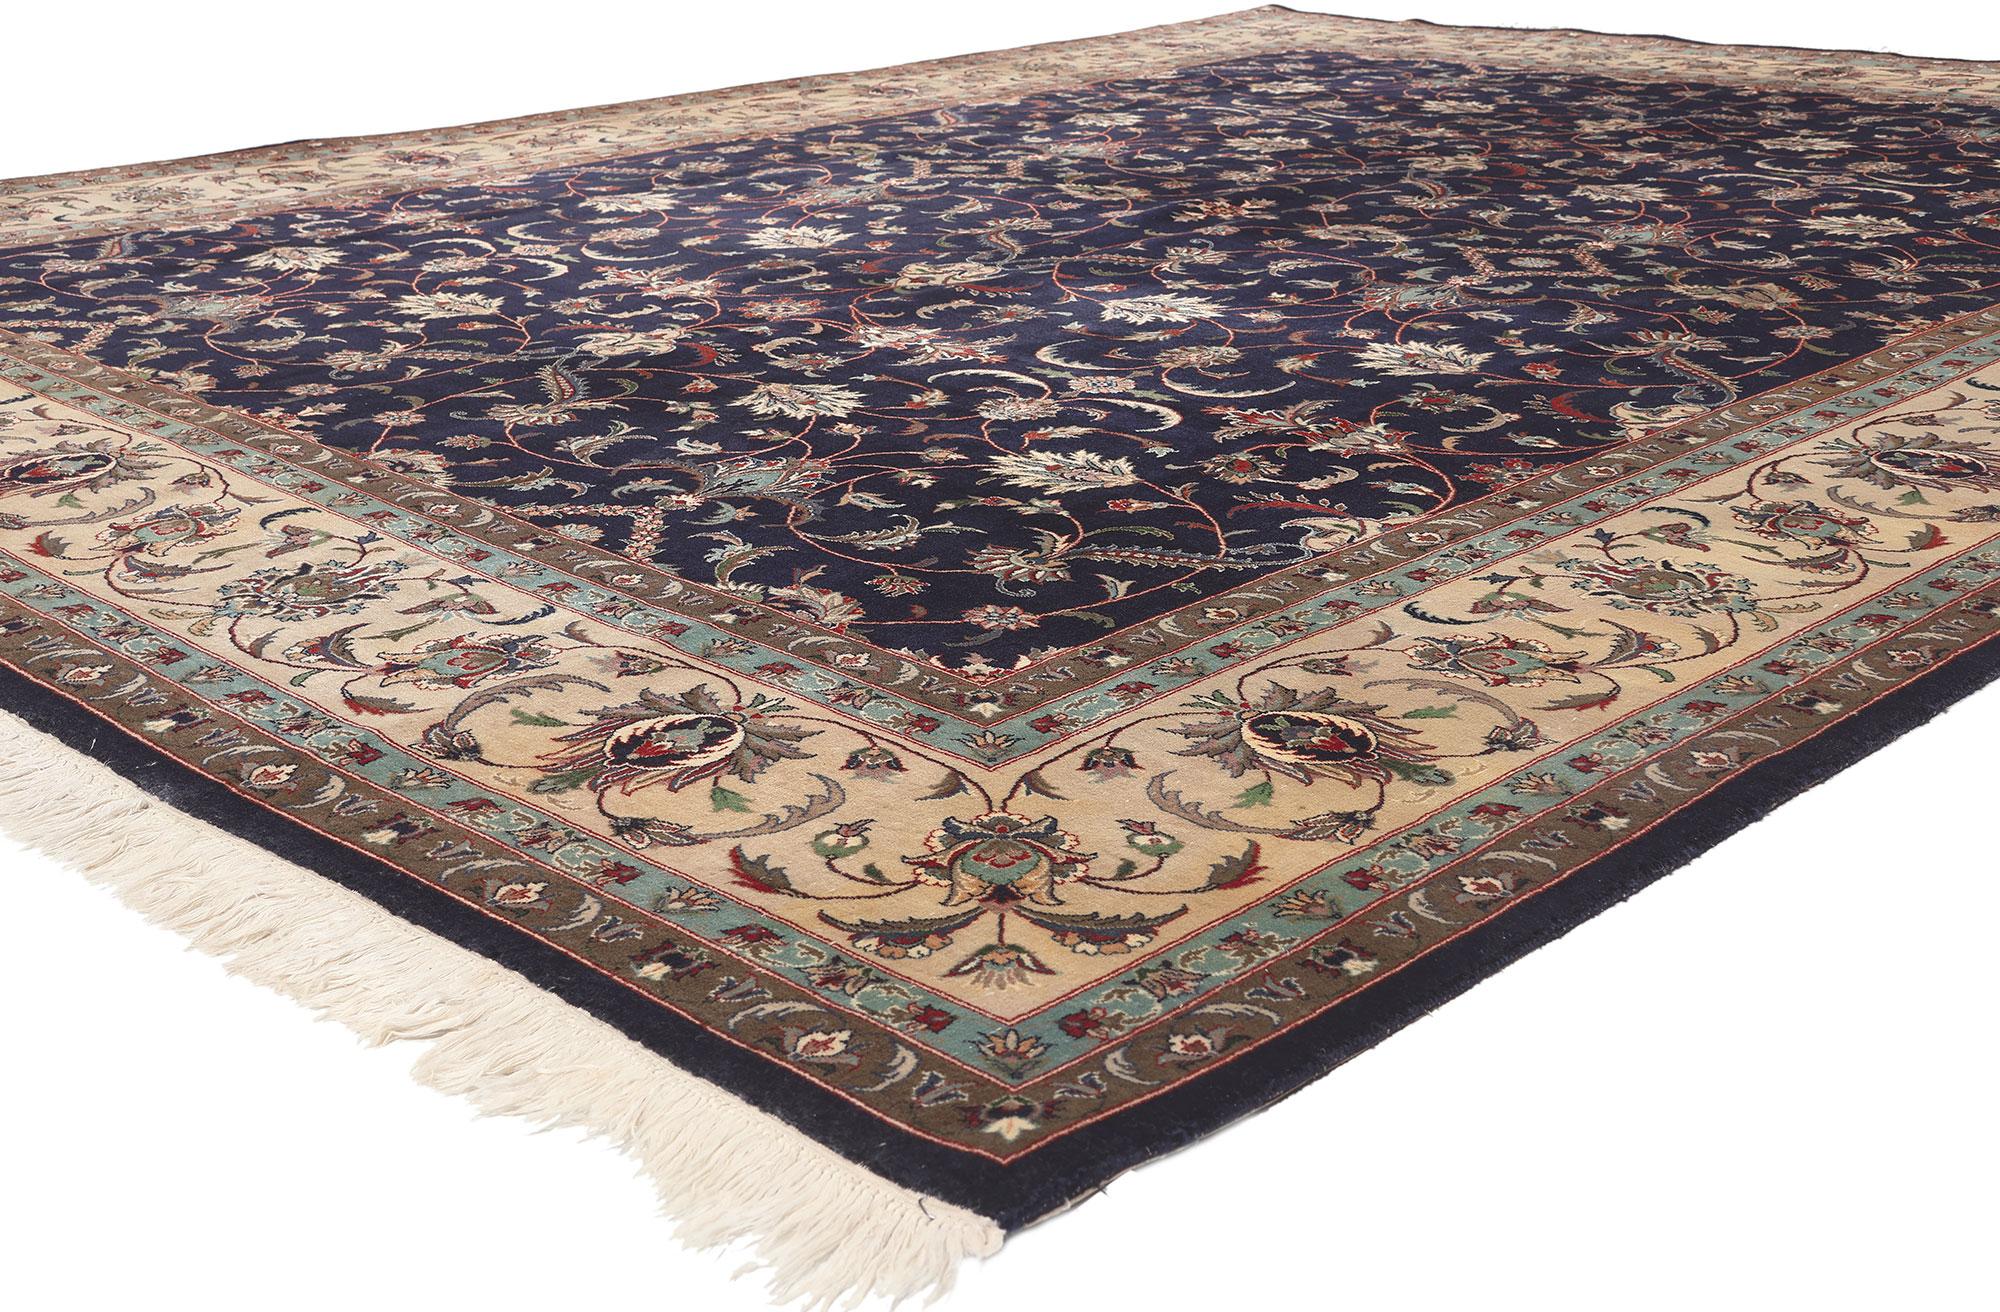 77081, alter persischer Teppich im Hollywood-Regency-Stil, pakistanischer Teppich. Dieser rassige und exquisite Teppich im Hollywood-Regency-Stil zeigt ein florales Allover-Muster aus wellenförmigen Ranken und persischen Blumen auf einem